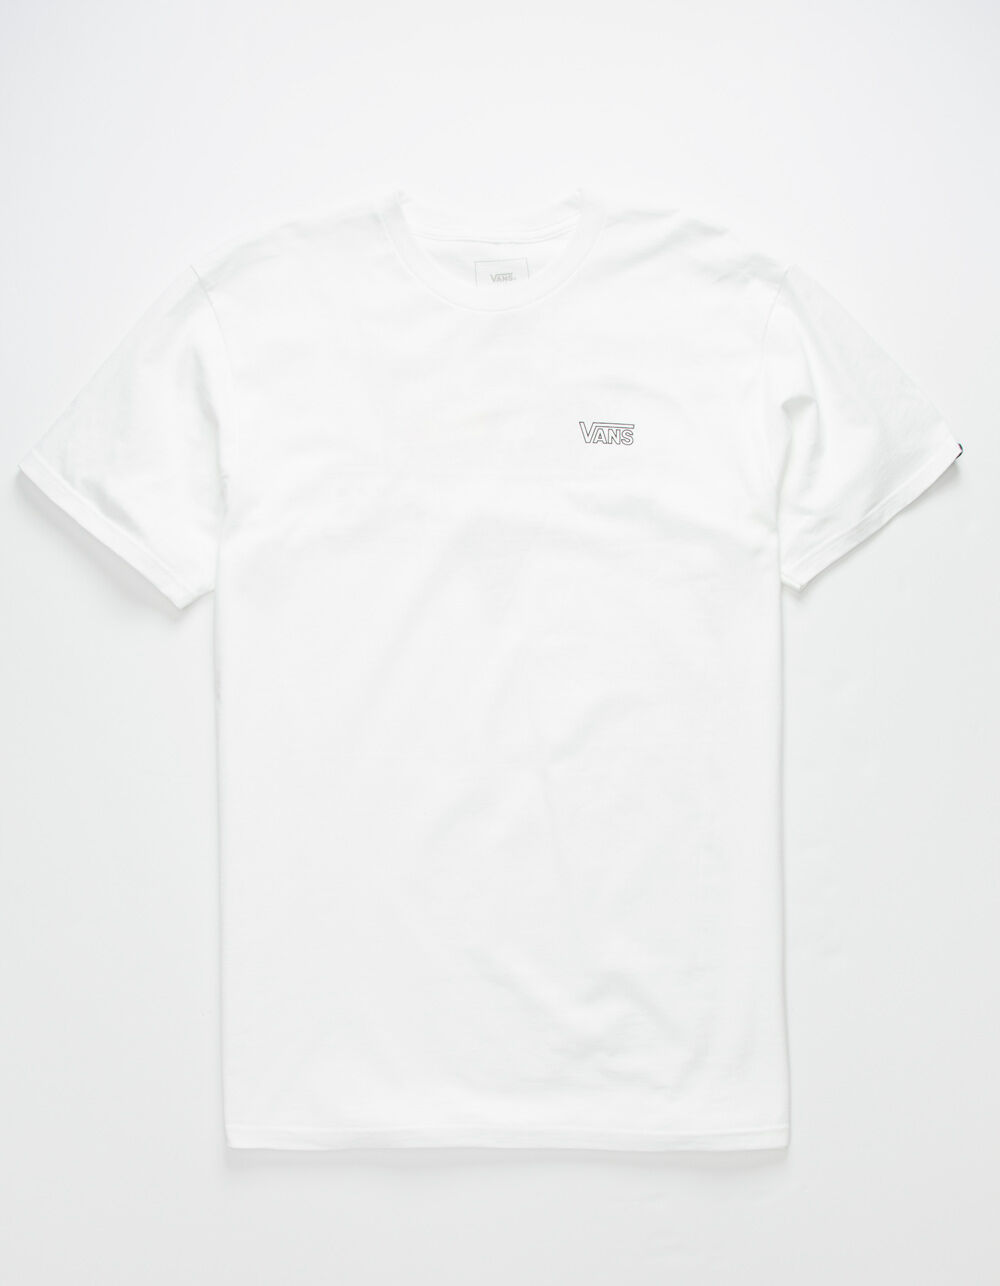 VANS Retro Waves Mens T-Shirt - WHITE | Tillys